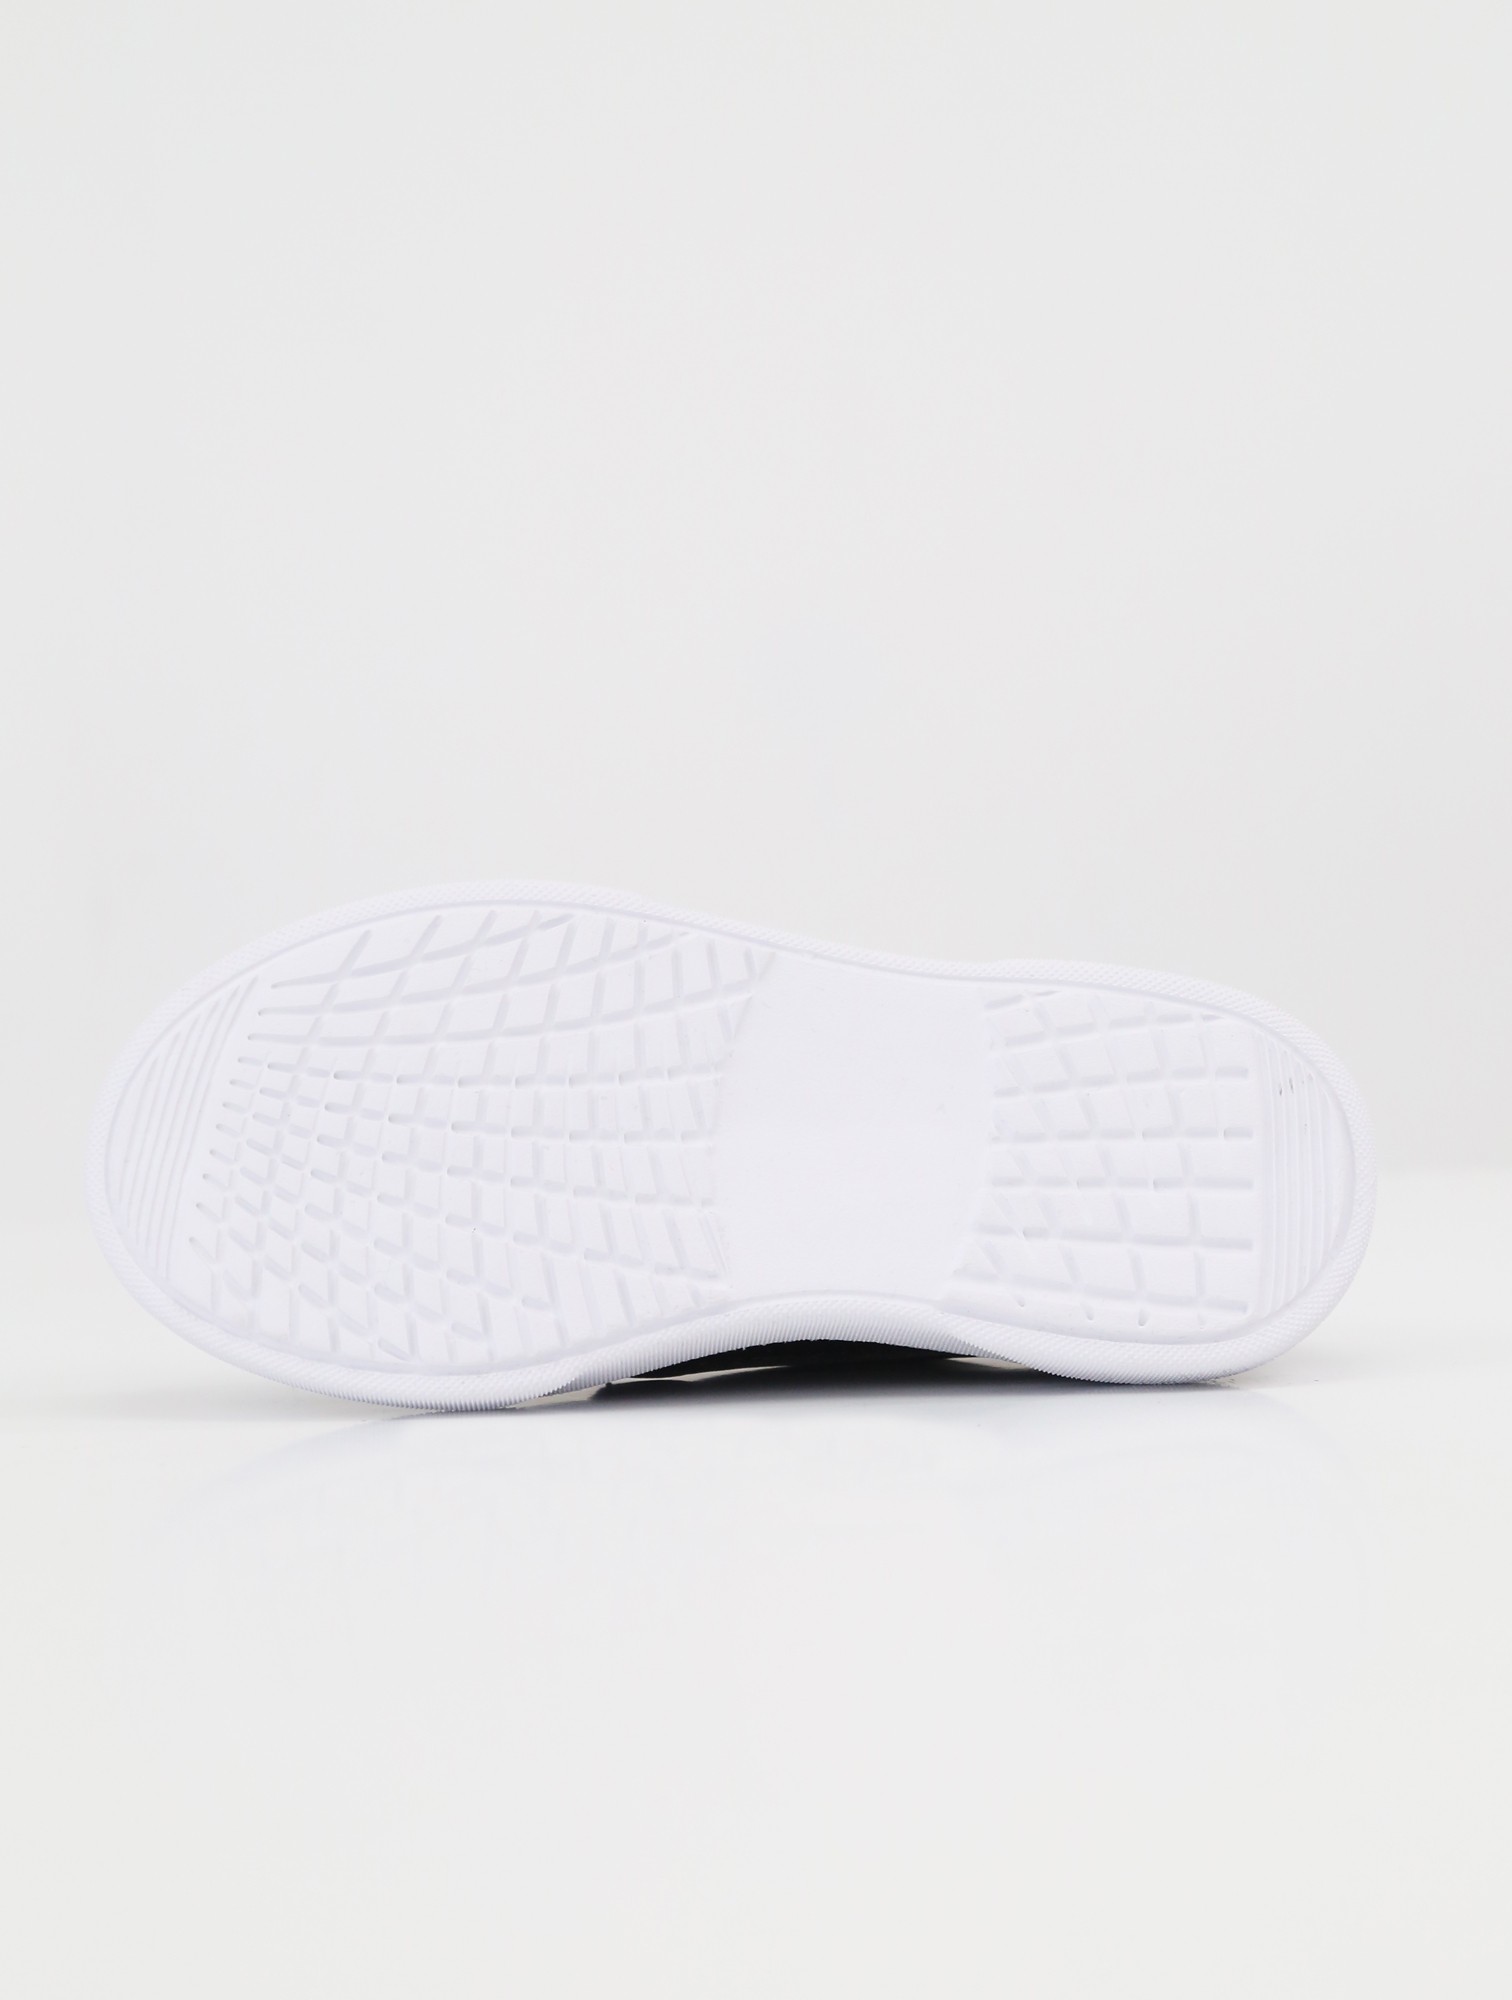 Jungen Schwarze Lack Oxford Schuhe, Klassisches Slip-On Design für Formelle & Casual Anlässe